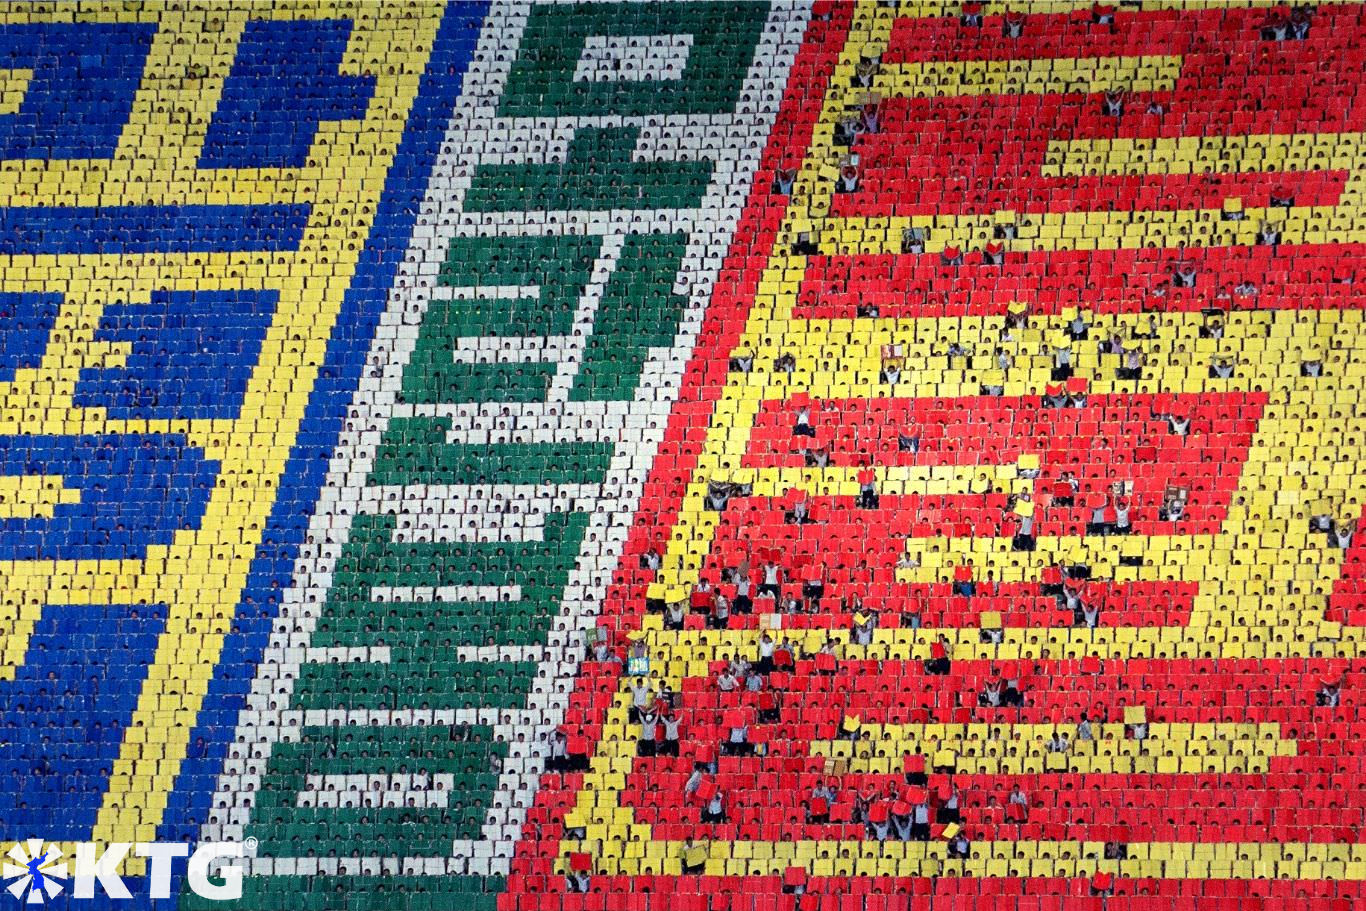 Les Mass Games en Corée du Nord ont en toile de fond 17 000 étudiants. Chaque élève crée un minuscule pixel créant de gigantesques mosaïques. Voyage organisé par KTG Travel